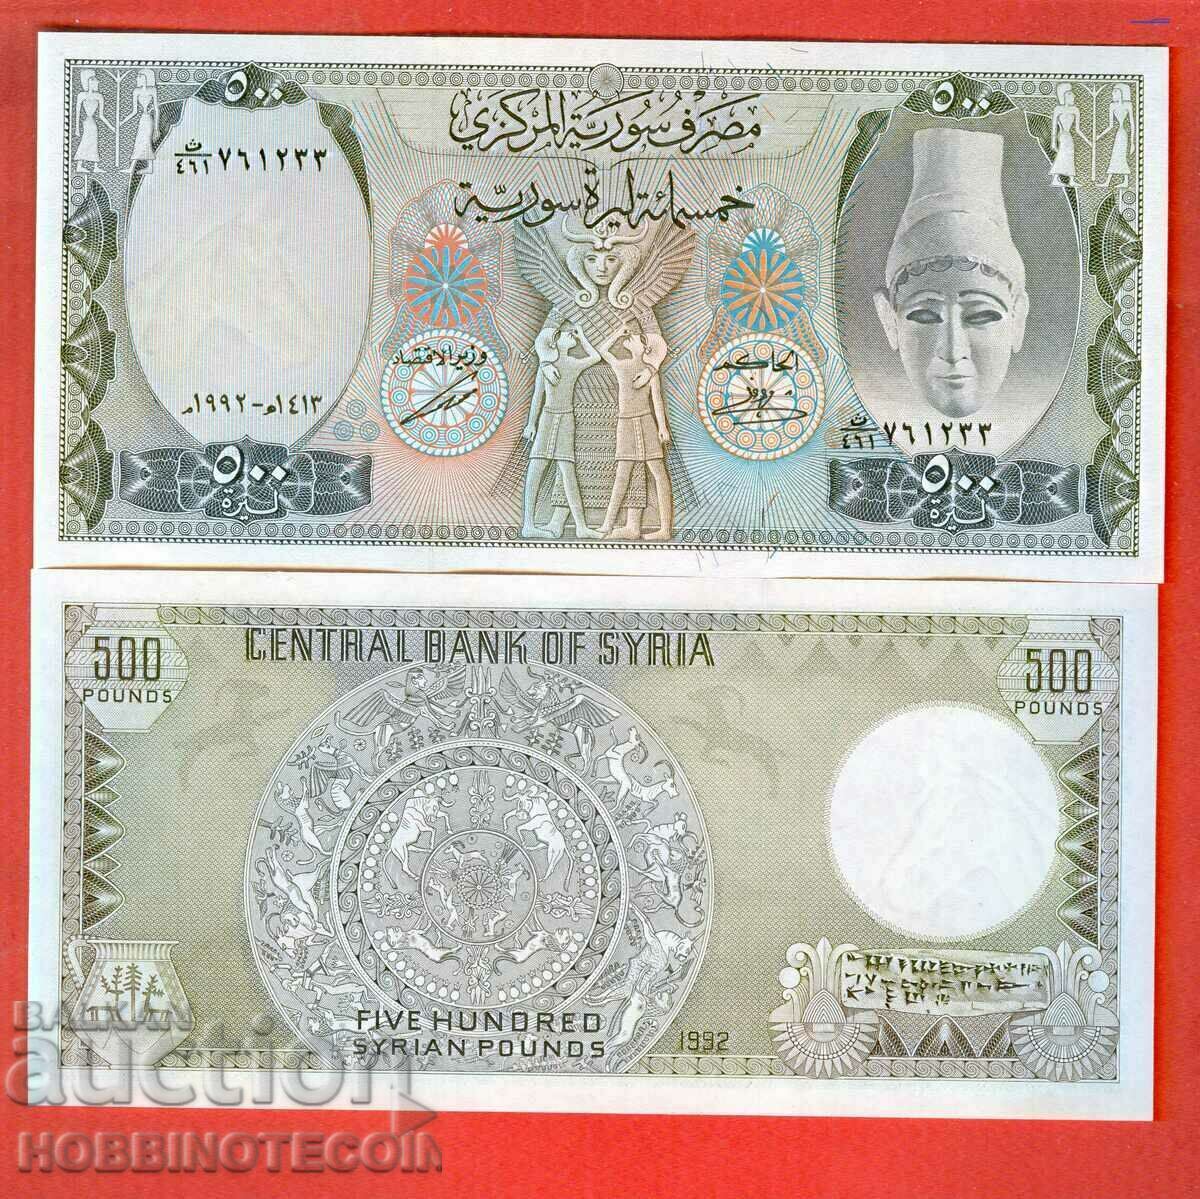 SYRIA SYRIA Emisiune de 500 de lire sterline - emisiune 1992 NOU UNC